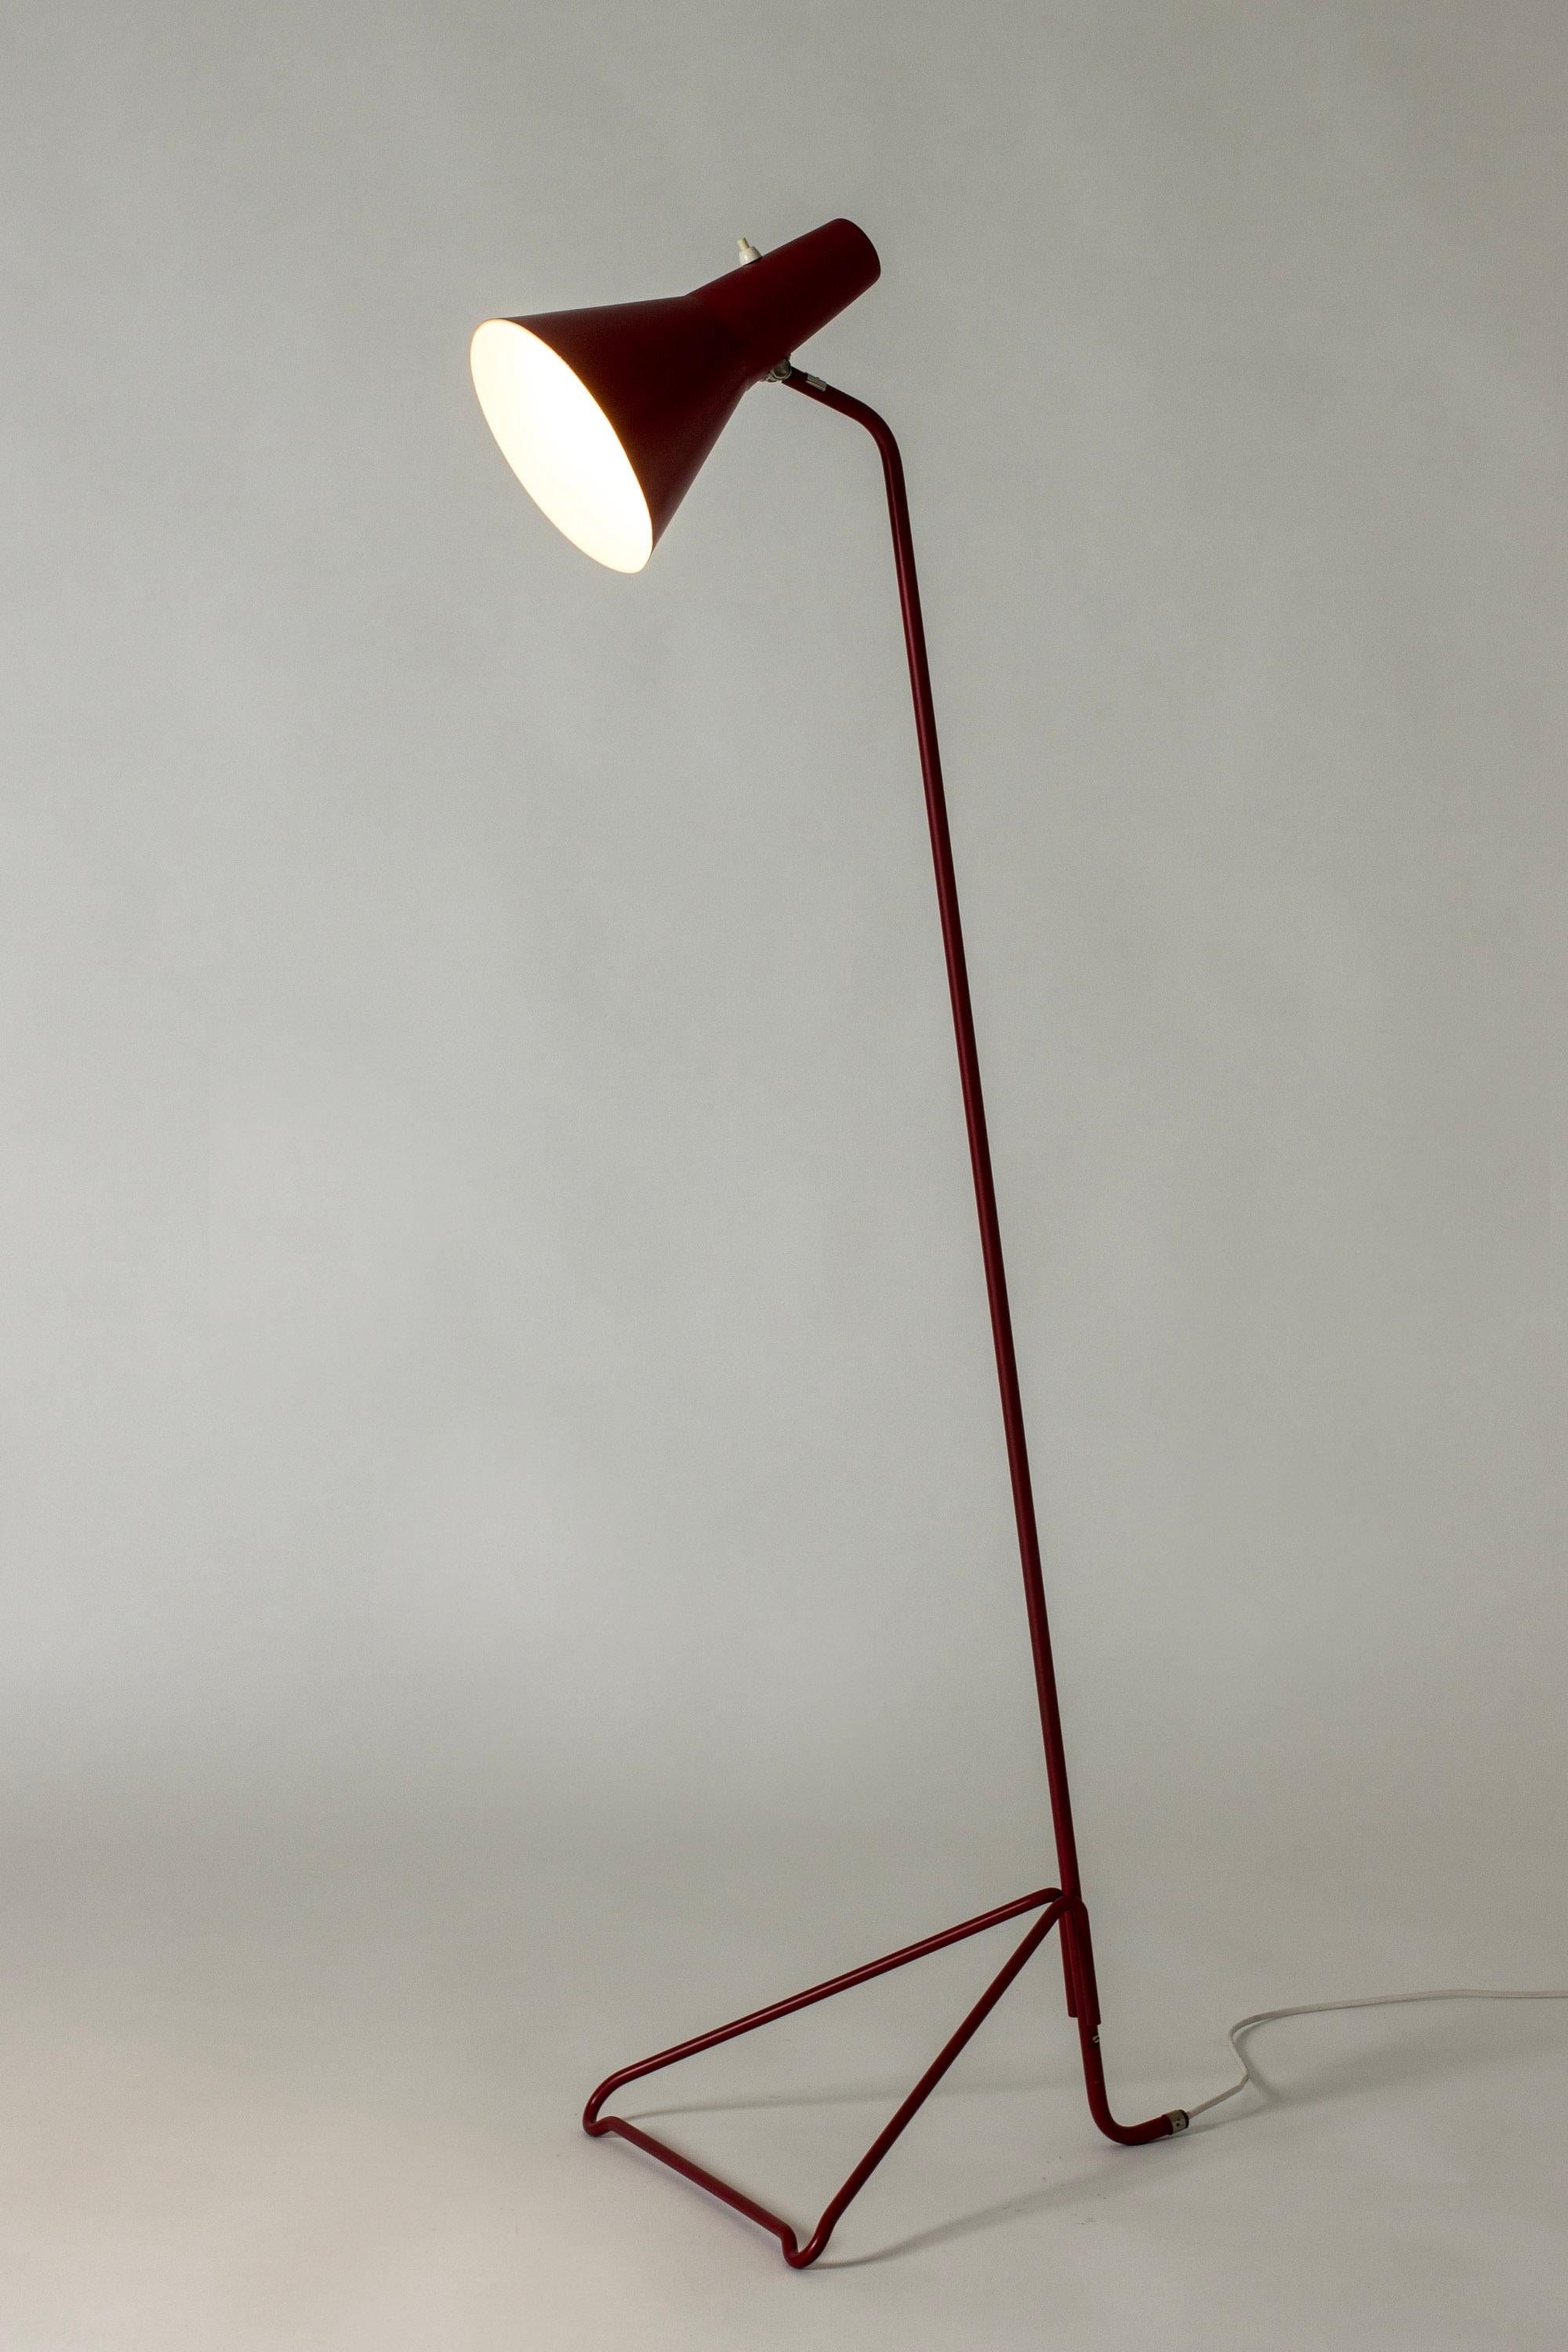 Vintage Scandinavian Modern Brass Floor Lamp, ASEA, Sweden, 1950s For Sale 3